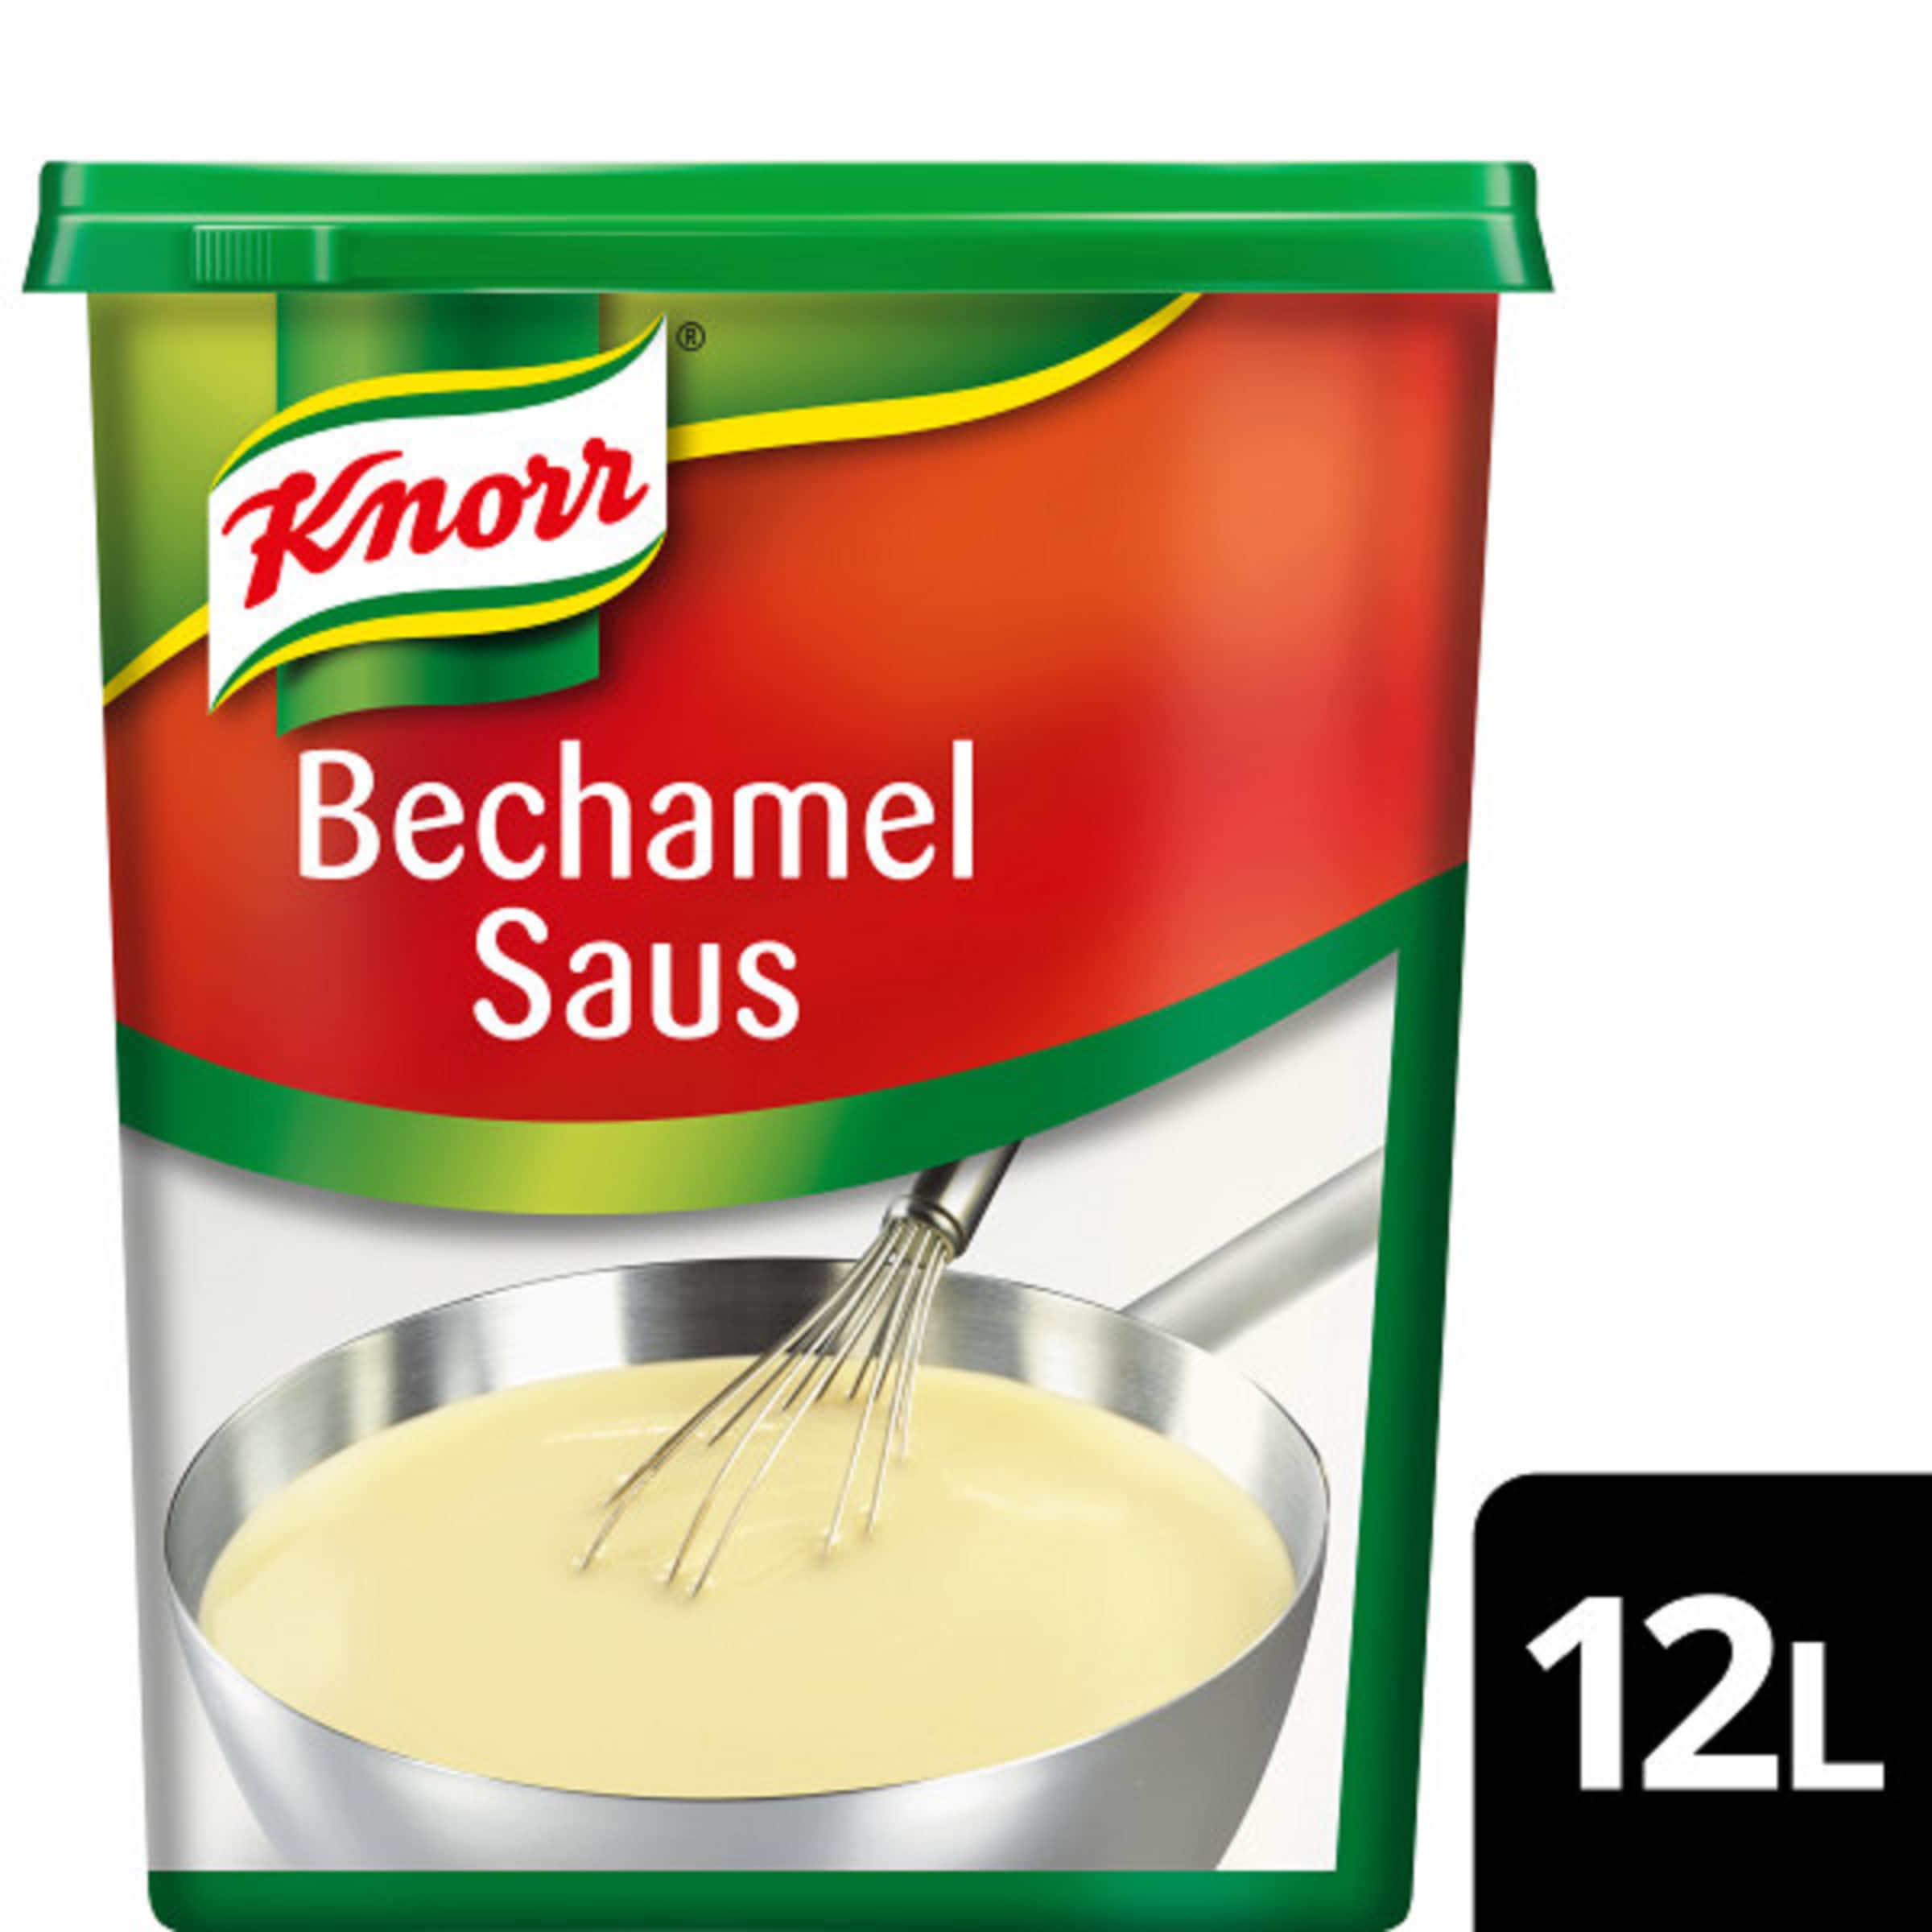 Knorr Bechamel saus Poeder 1 kg​ - 